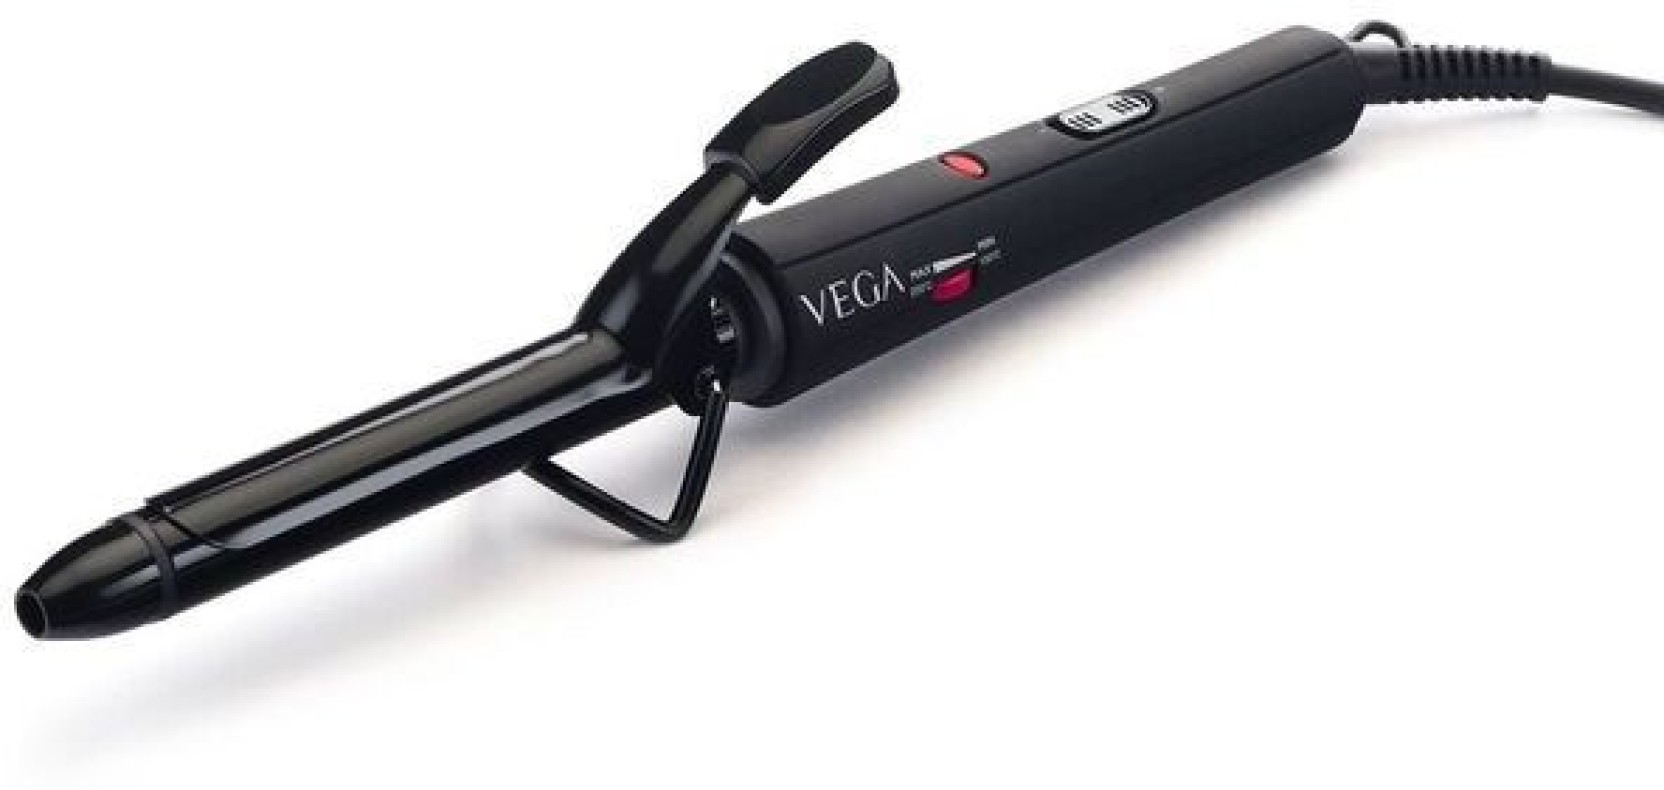 Vega VHCH-03 Electric Hair Curler Price in India - Buy ...